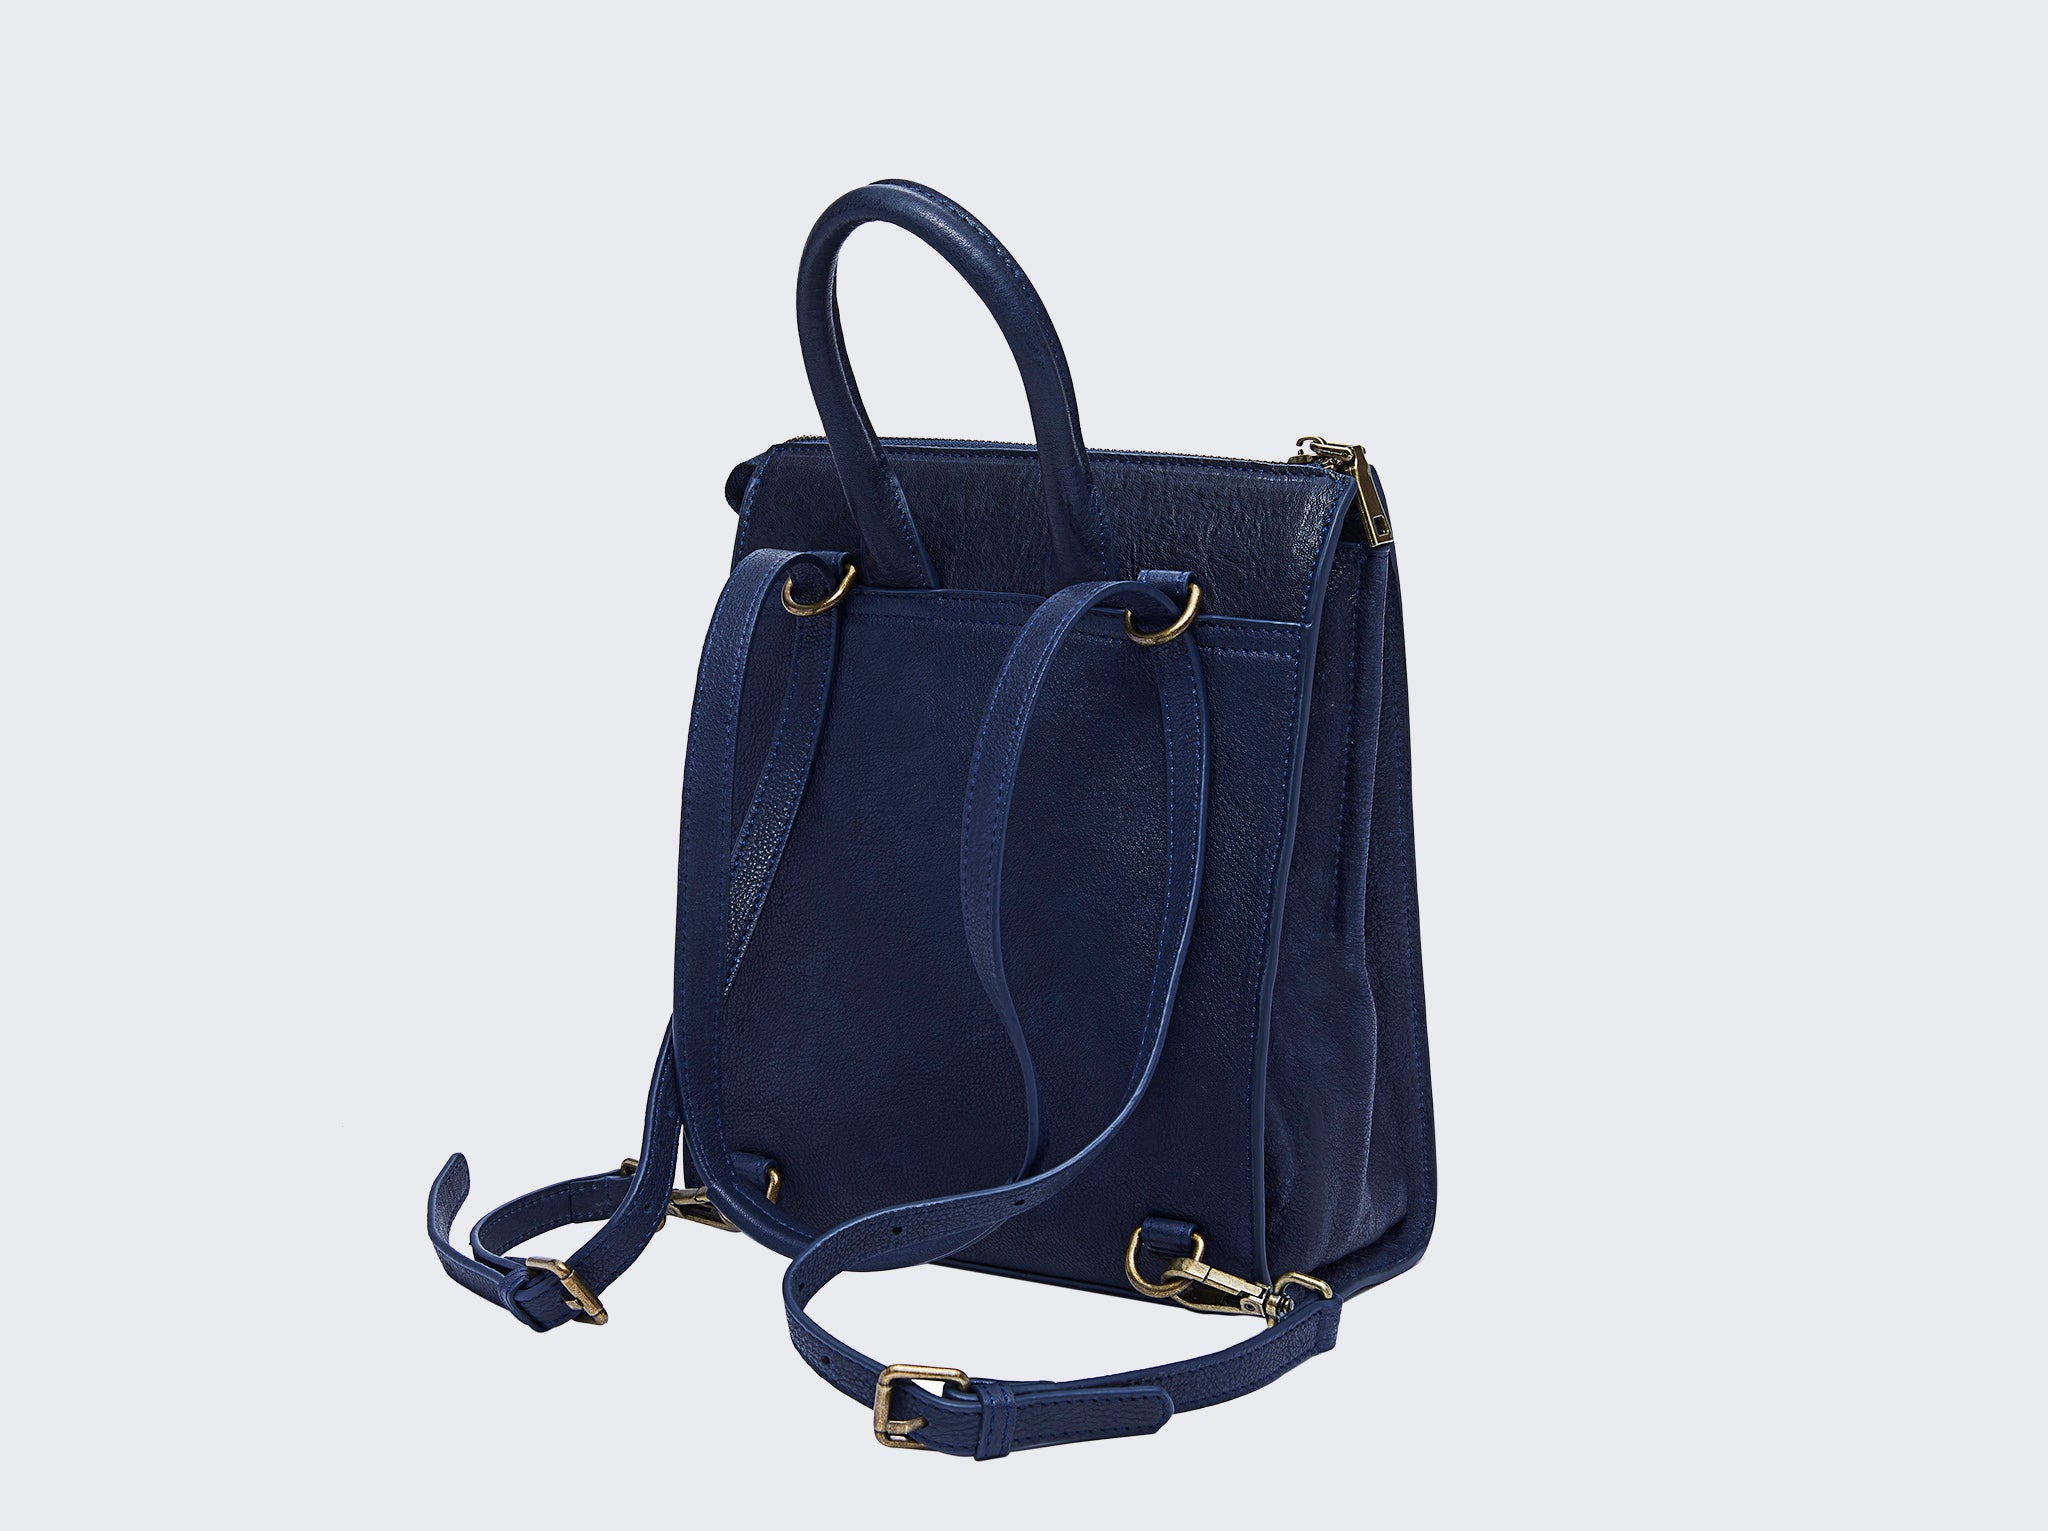 The Camille Bleu Shoulder Bag